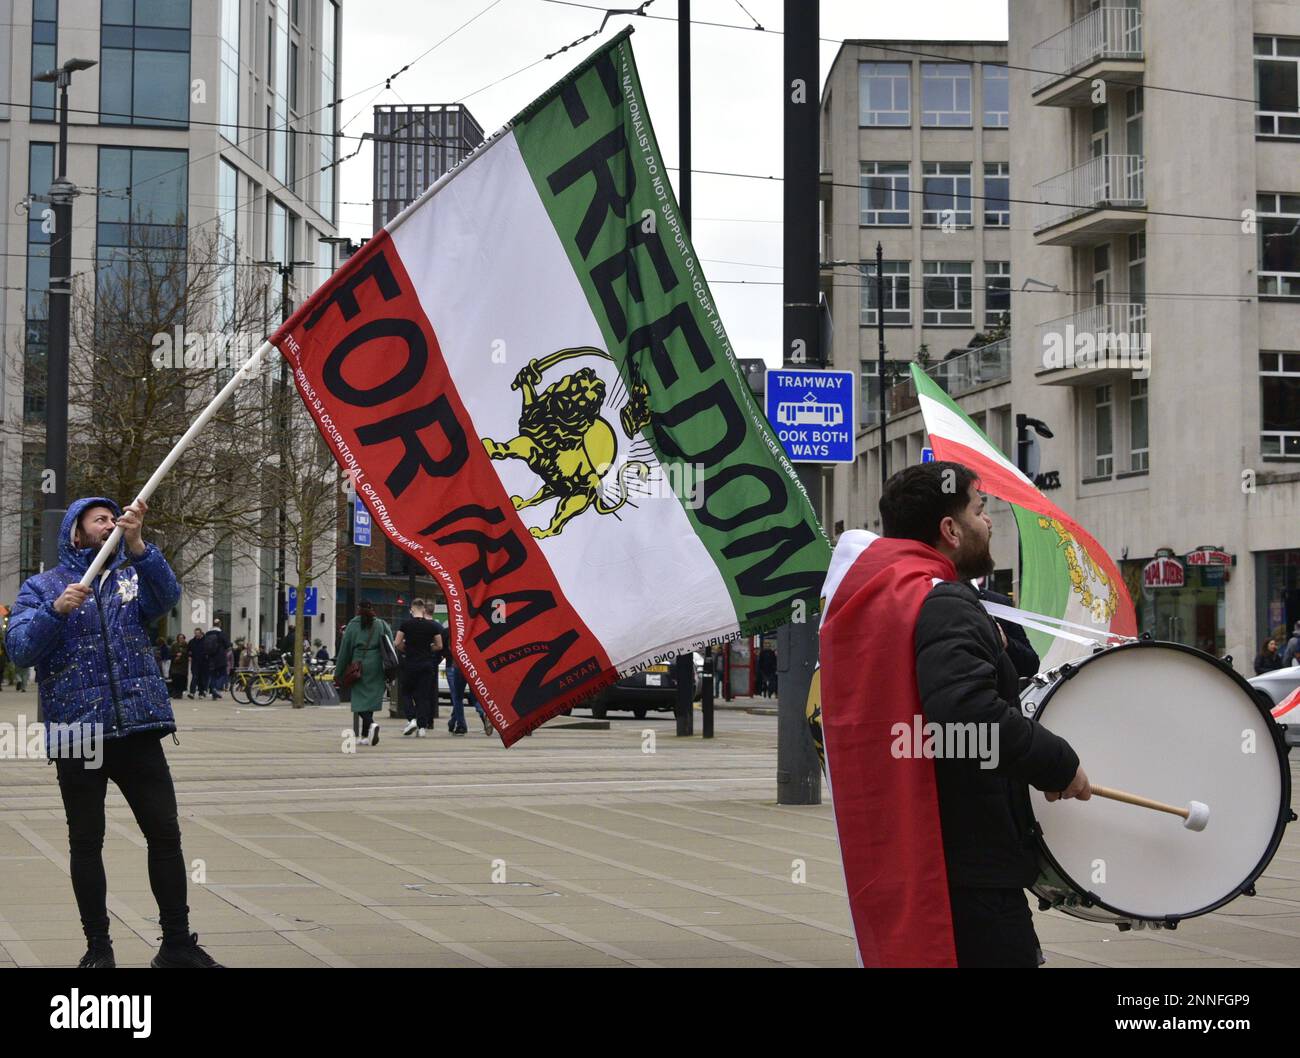 Ein Mann hat eine Flagge, die besagt: Freiheit für den Iran. Die Demonstranten meldeten sich am 25. Februar am St. Peter's Square, im Zentrum von Manchester, England, Vereinigtes Königreich, 2023, kritisch gegenüber der iranischen Regierung und wütend über den Tod der kurdischen Frau Mahsa Amini, 22 Jahre alt. Mahsa Amini starb, nachdem er am 16. September 2022 von der religiösen Moralpolizei verhaftet wurde, weil er den Hijab nicht gemäß den Regierungsregeln trug. Dies führte zu Protesten im ganzen Iran. Stockfoto